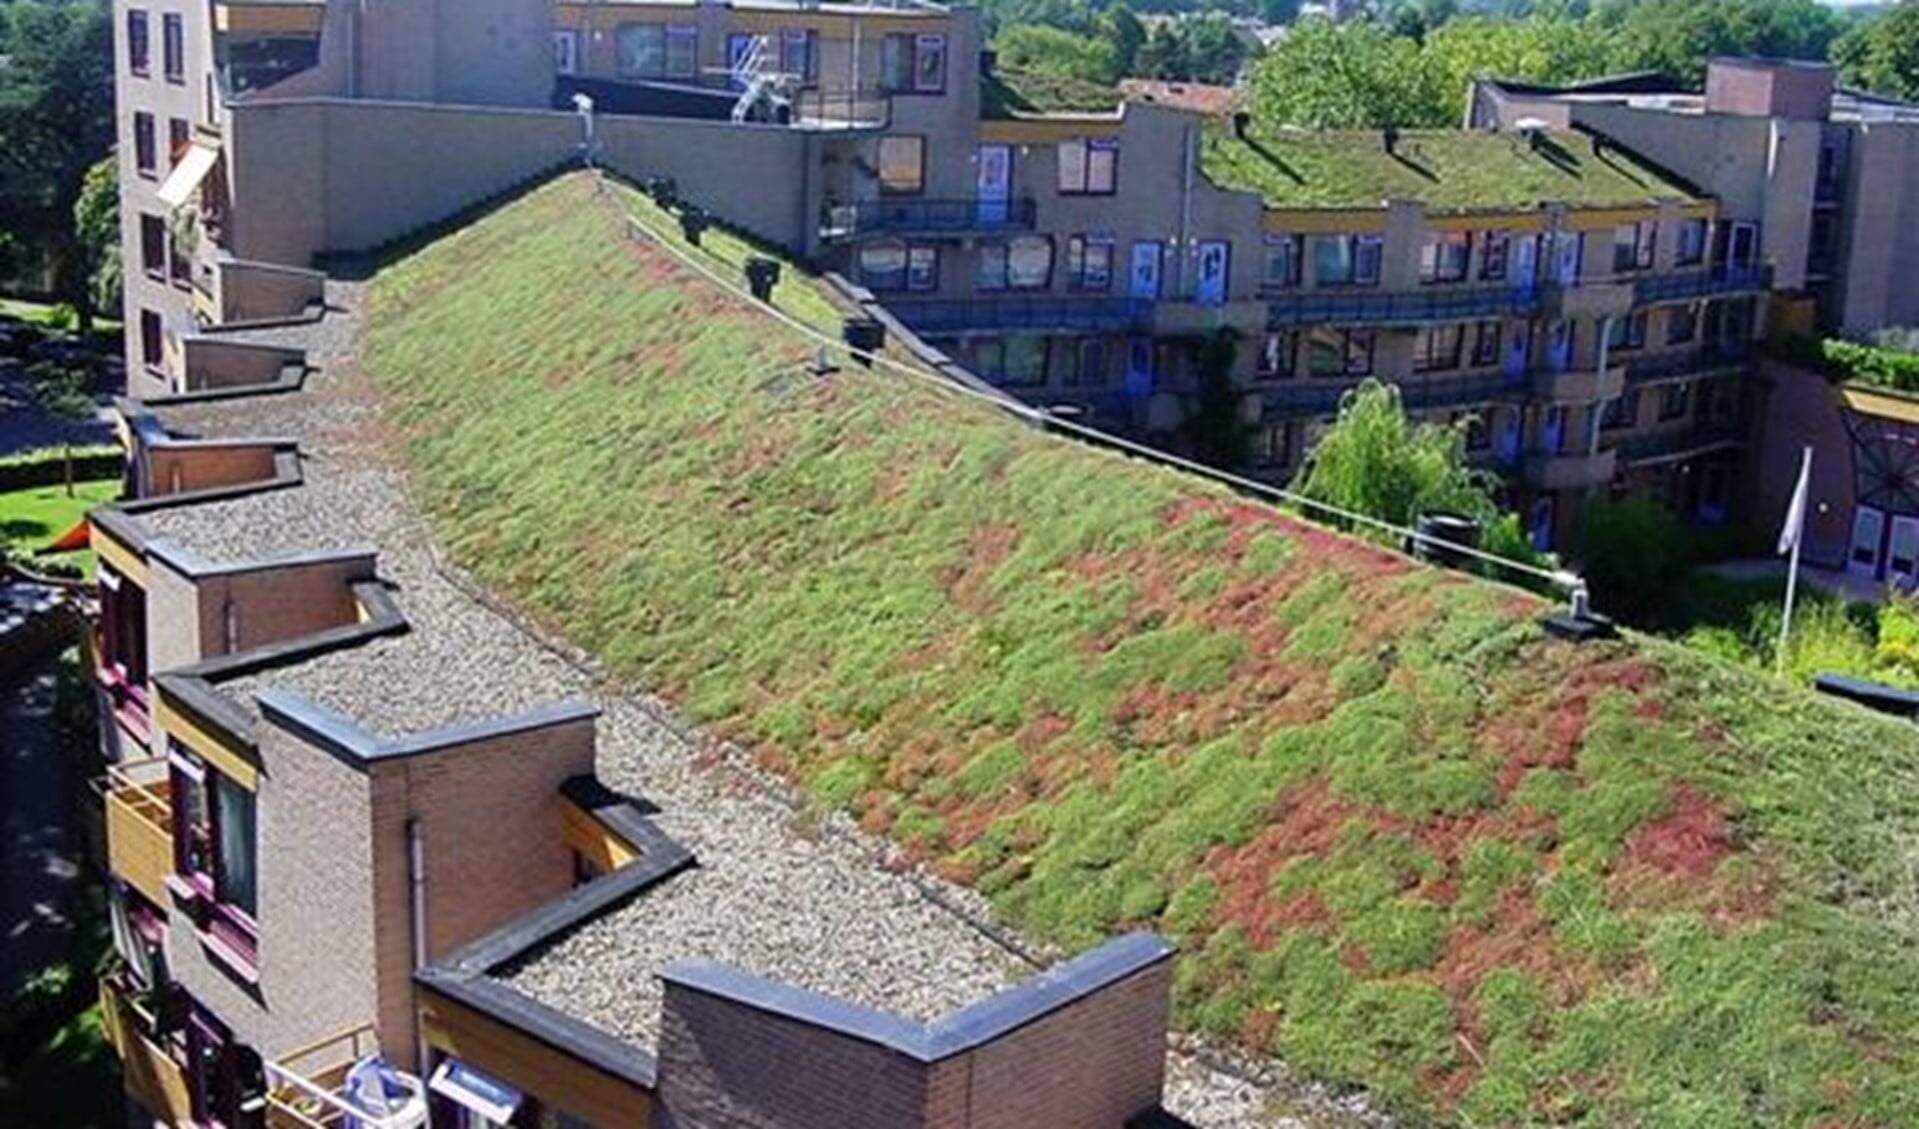 De gemeente hoopt met subsidie meer dan 10.000 m2 groen dak te realiseren (archieffoto).